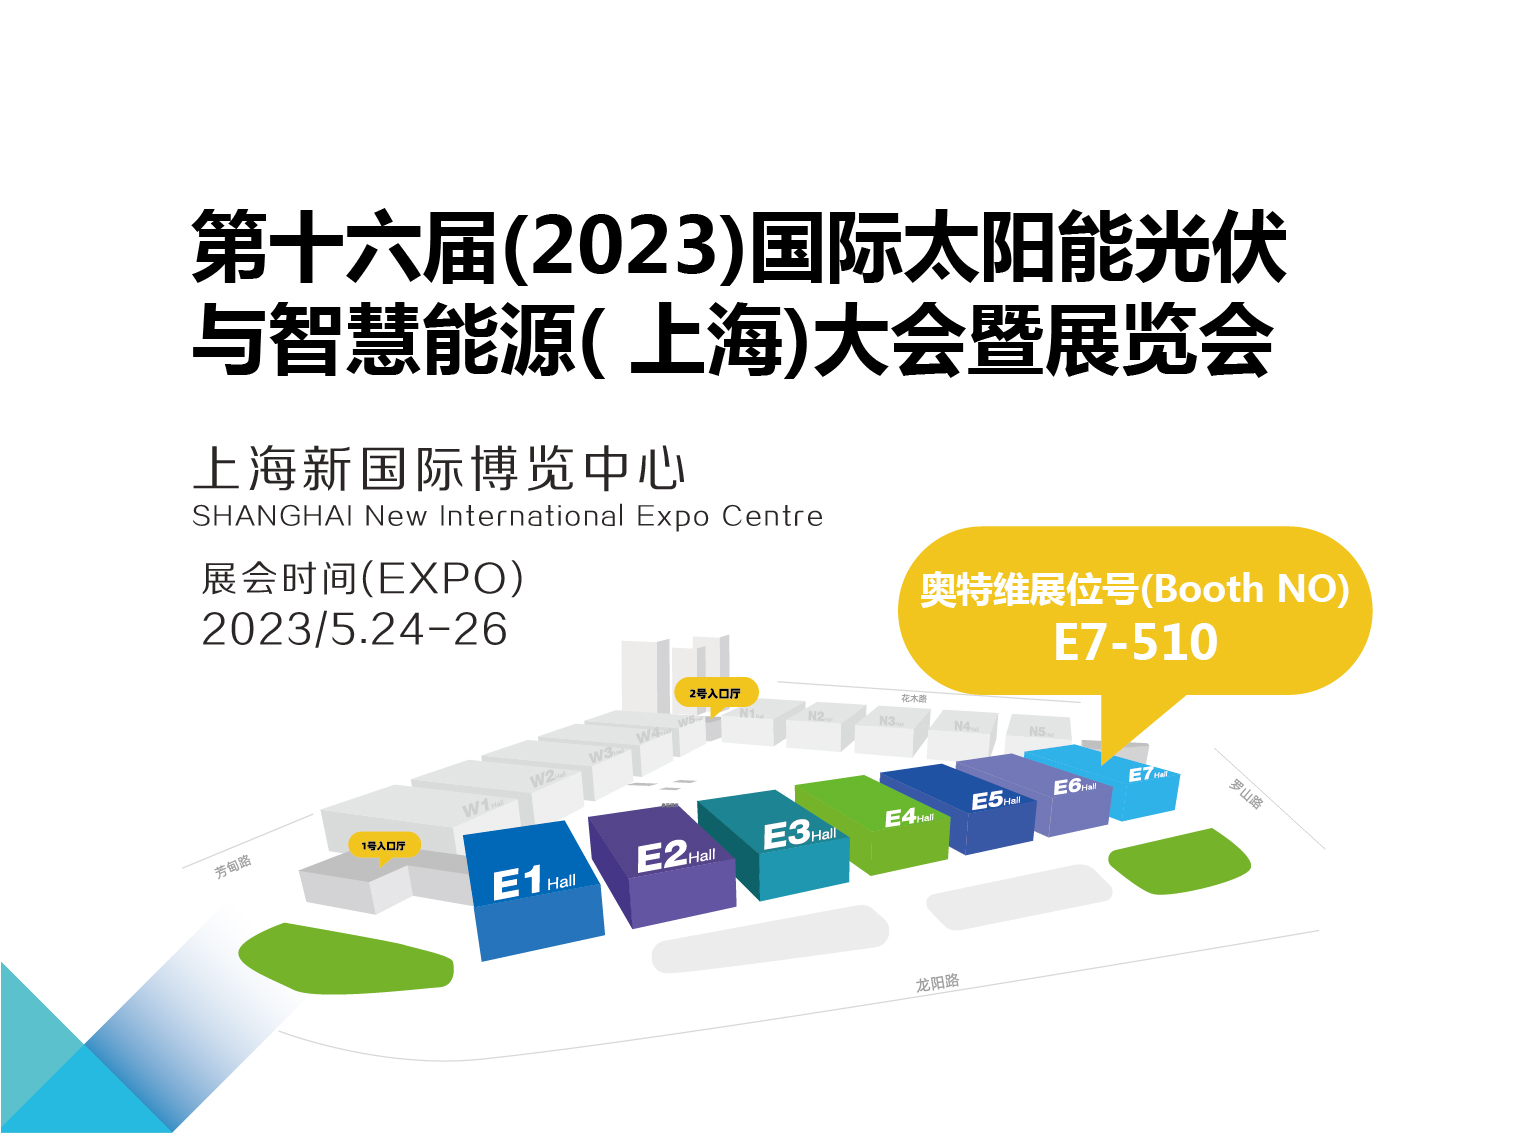 2023年5月24-26日 SNEC第十六届(2023)国际太阳能光伏与智慧能源(上海)大会暨展览会